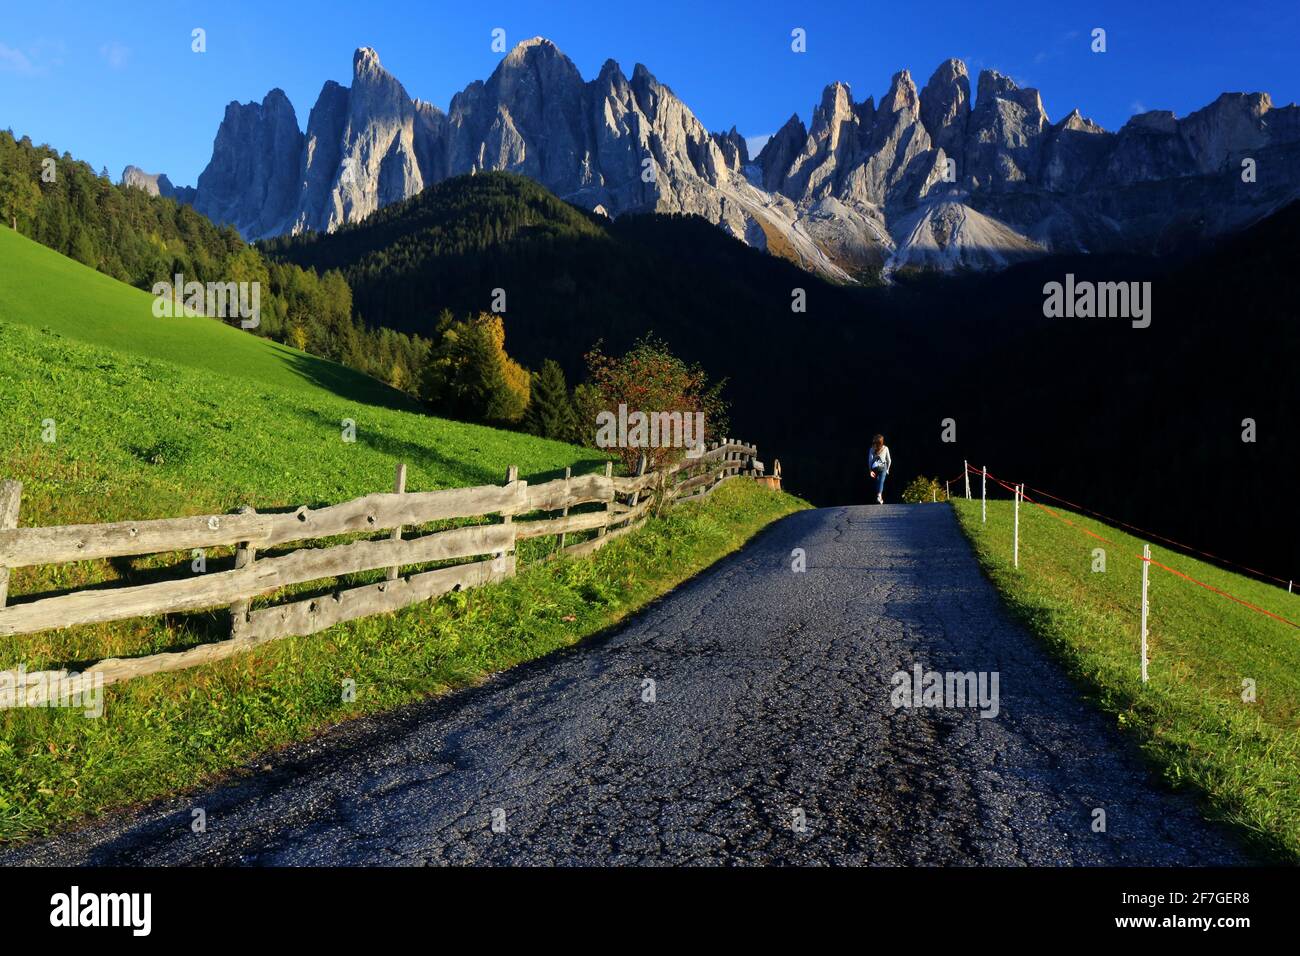 Dolomiten, Fabelhafte Ausblicke auf die faszinierende Bergwelt der märchenhaften Geislerspitzen in St. Magdalena im Dolomitental Villnöss. Südtirol Stock Photo